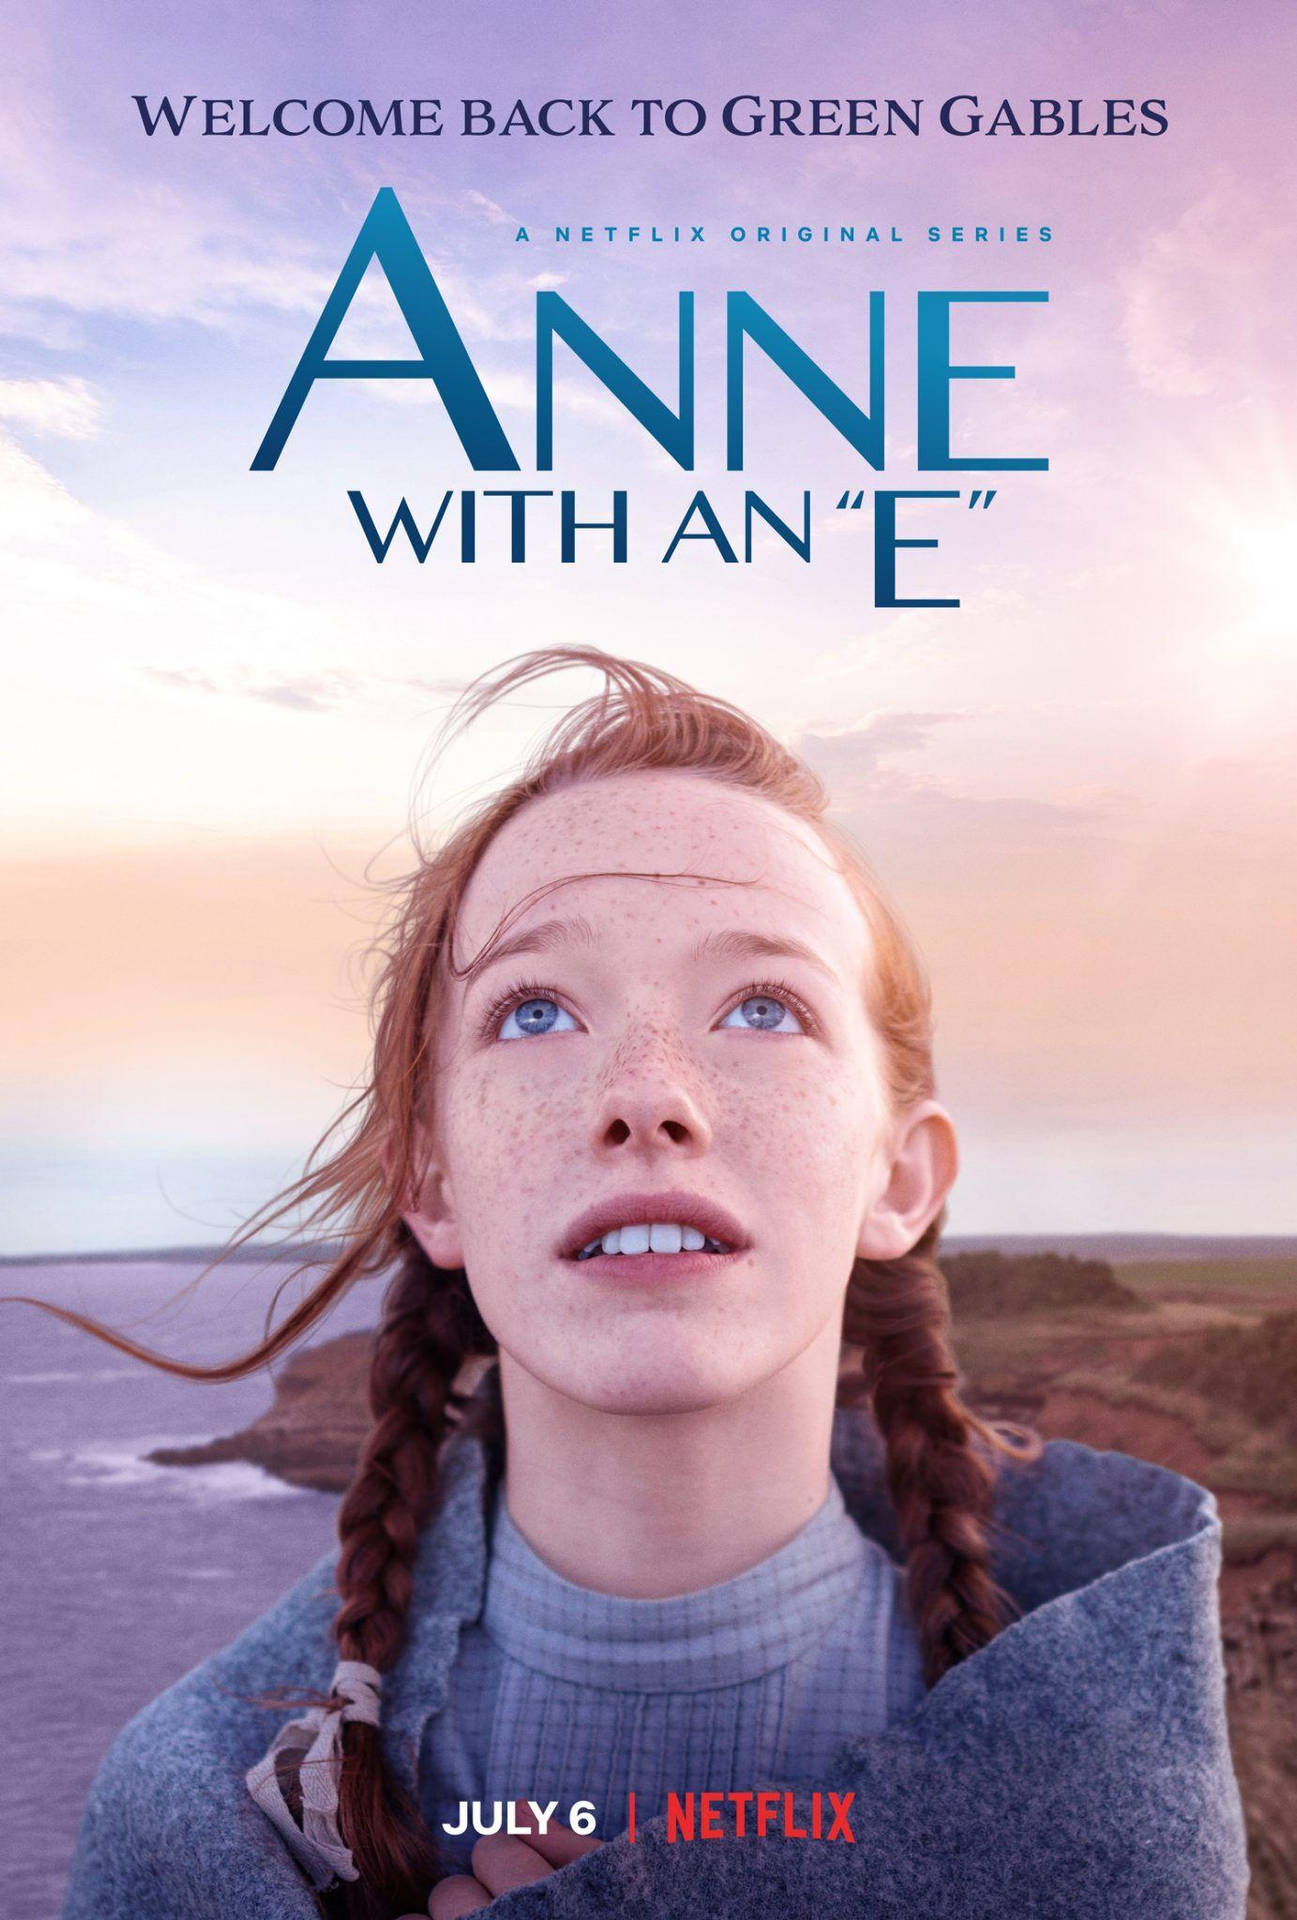 Posterda Segunda Temporada De Anne With An E. Papel de Parede